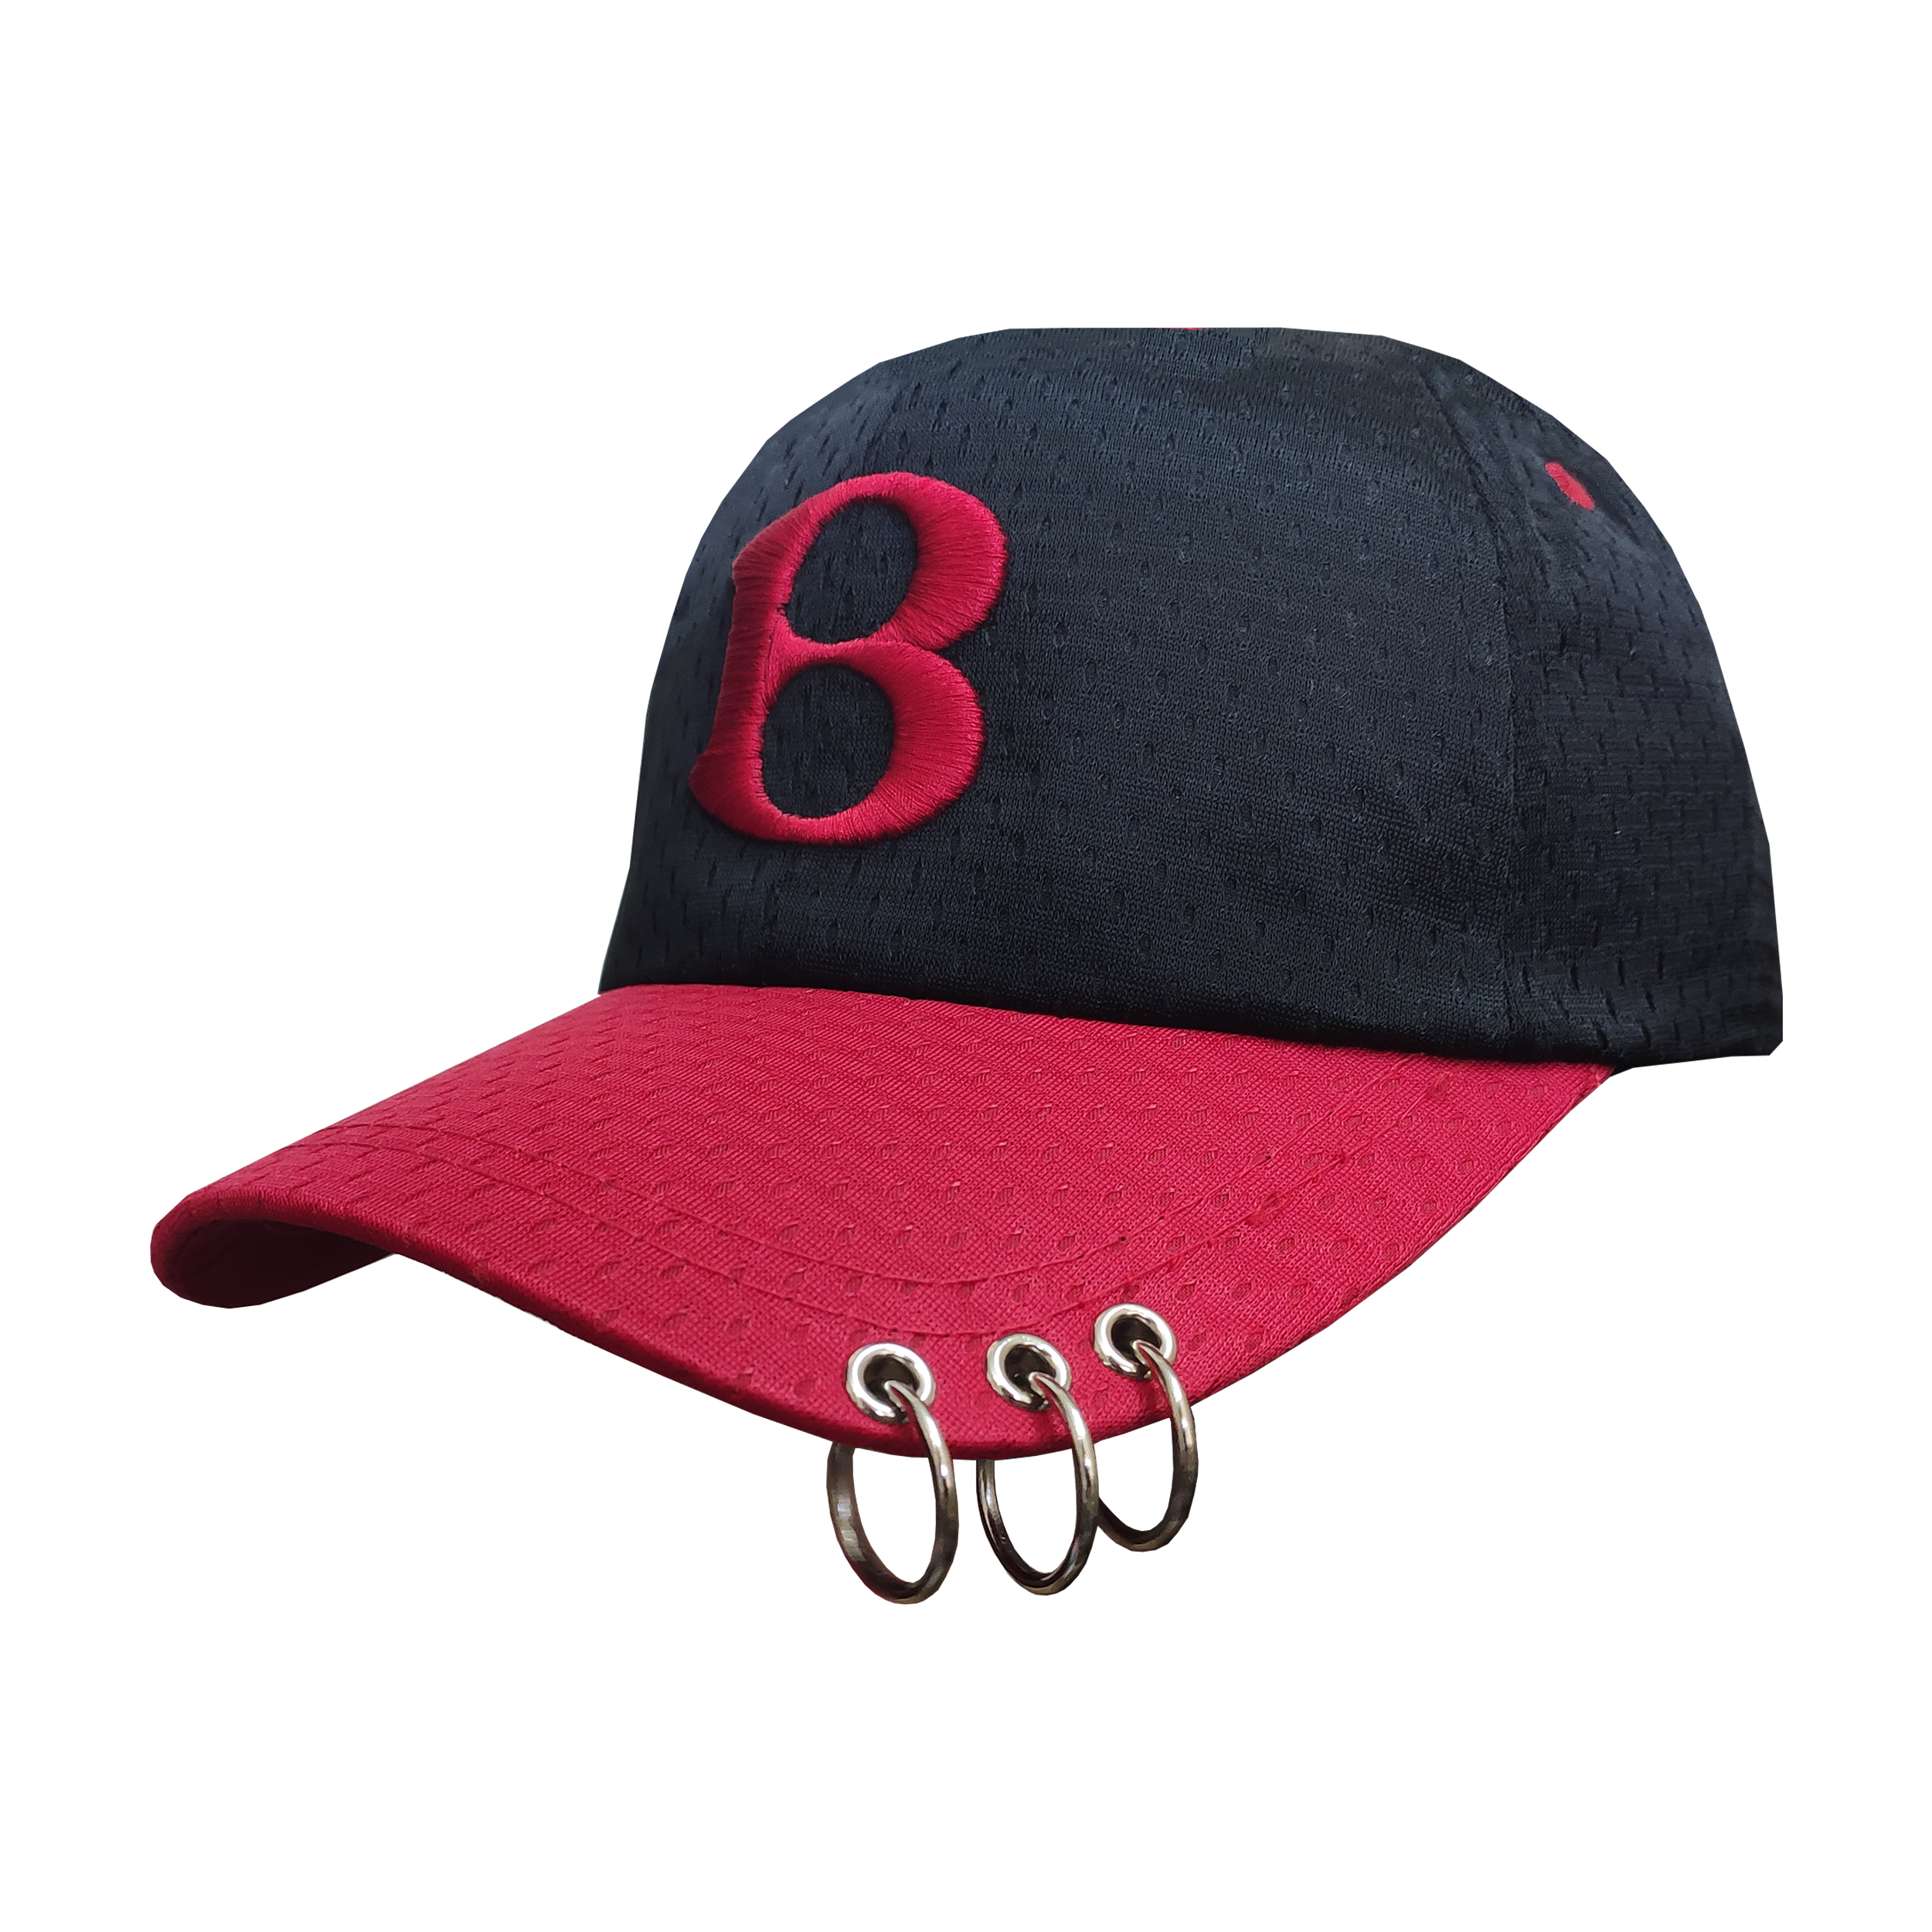 کلاه کپ طرح B کد 30457 رنگ مشکی